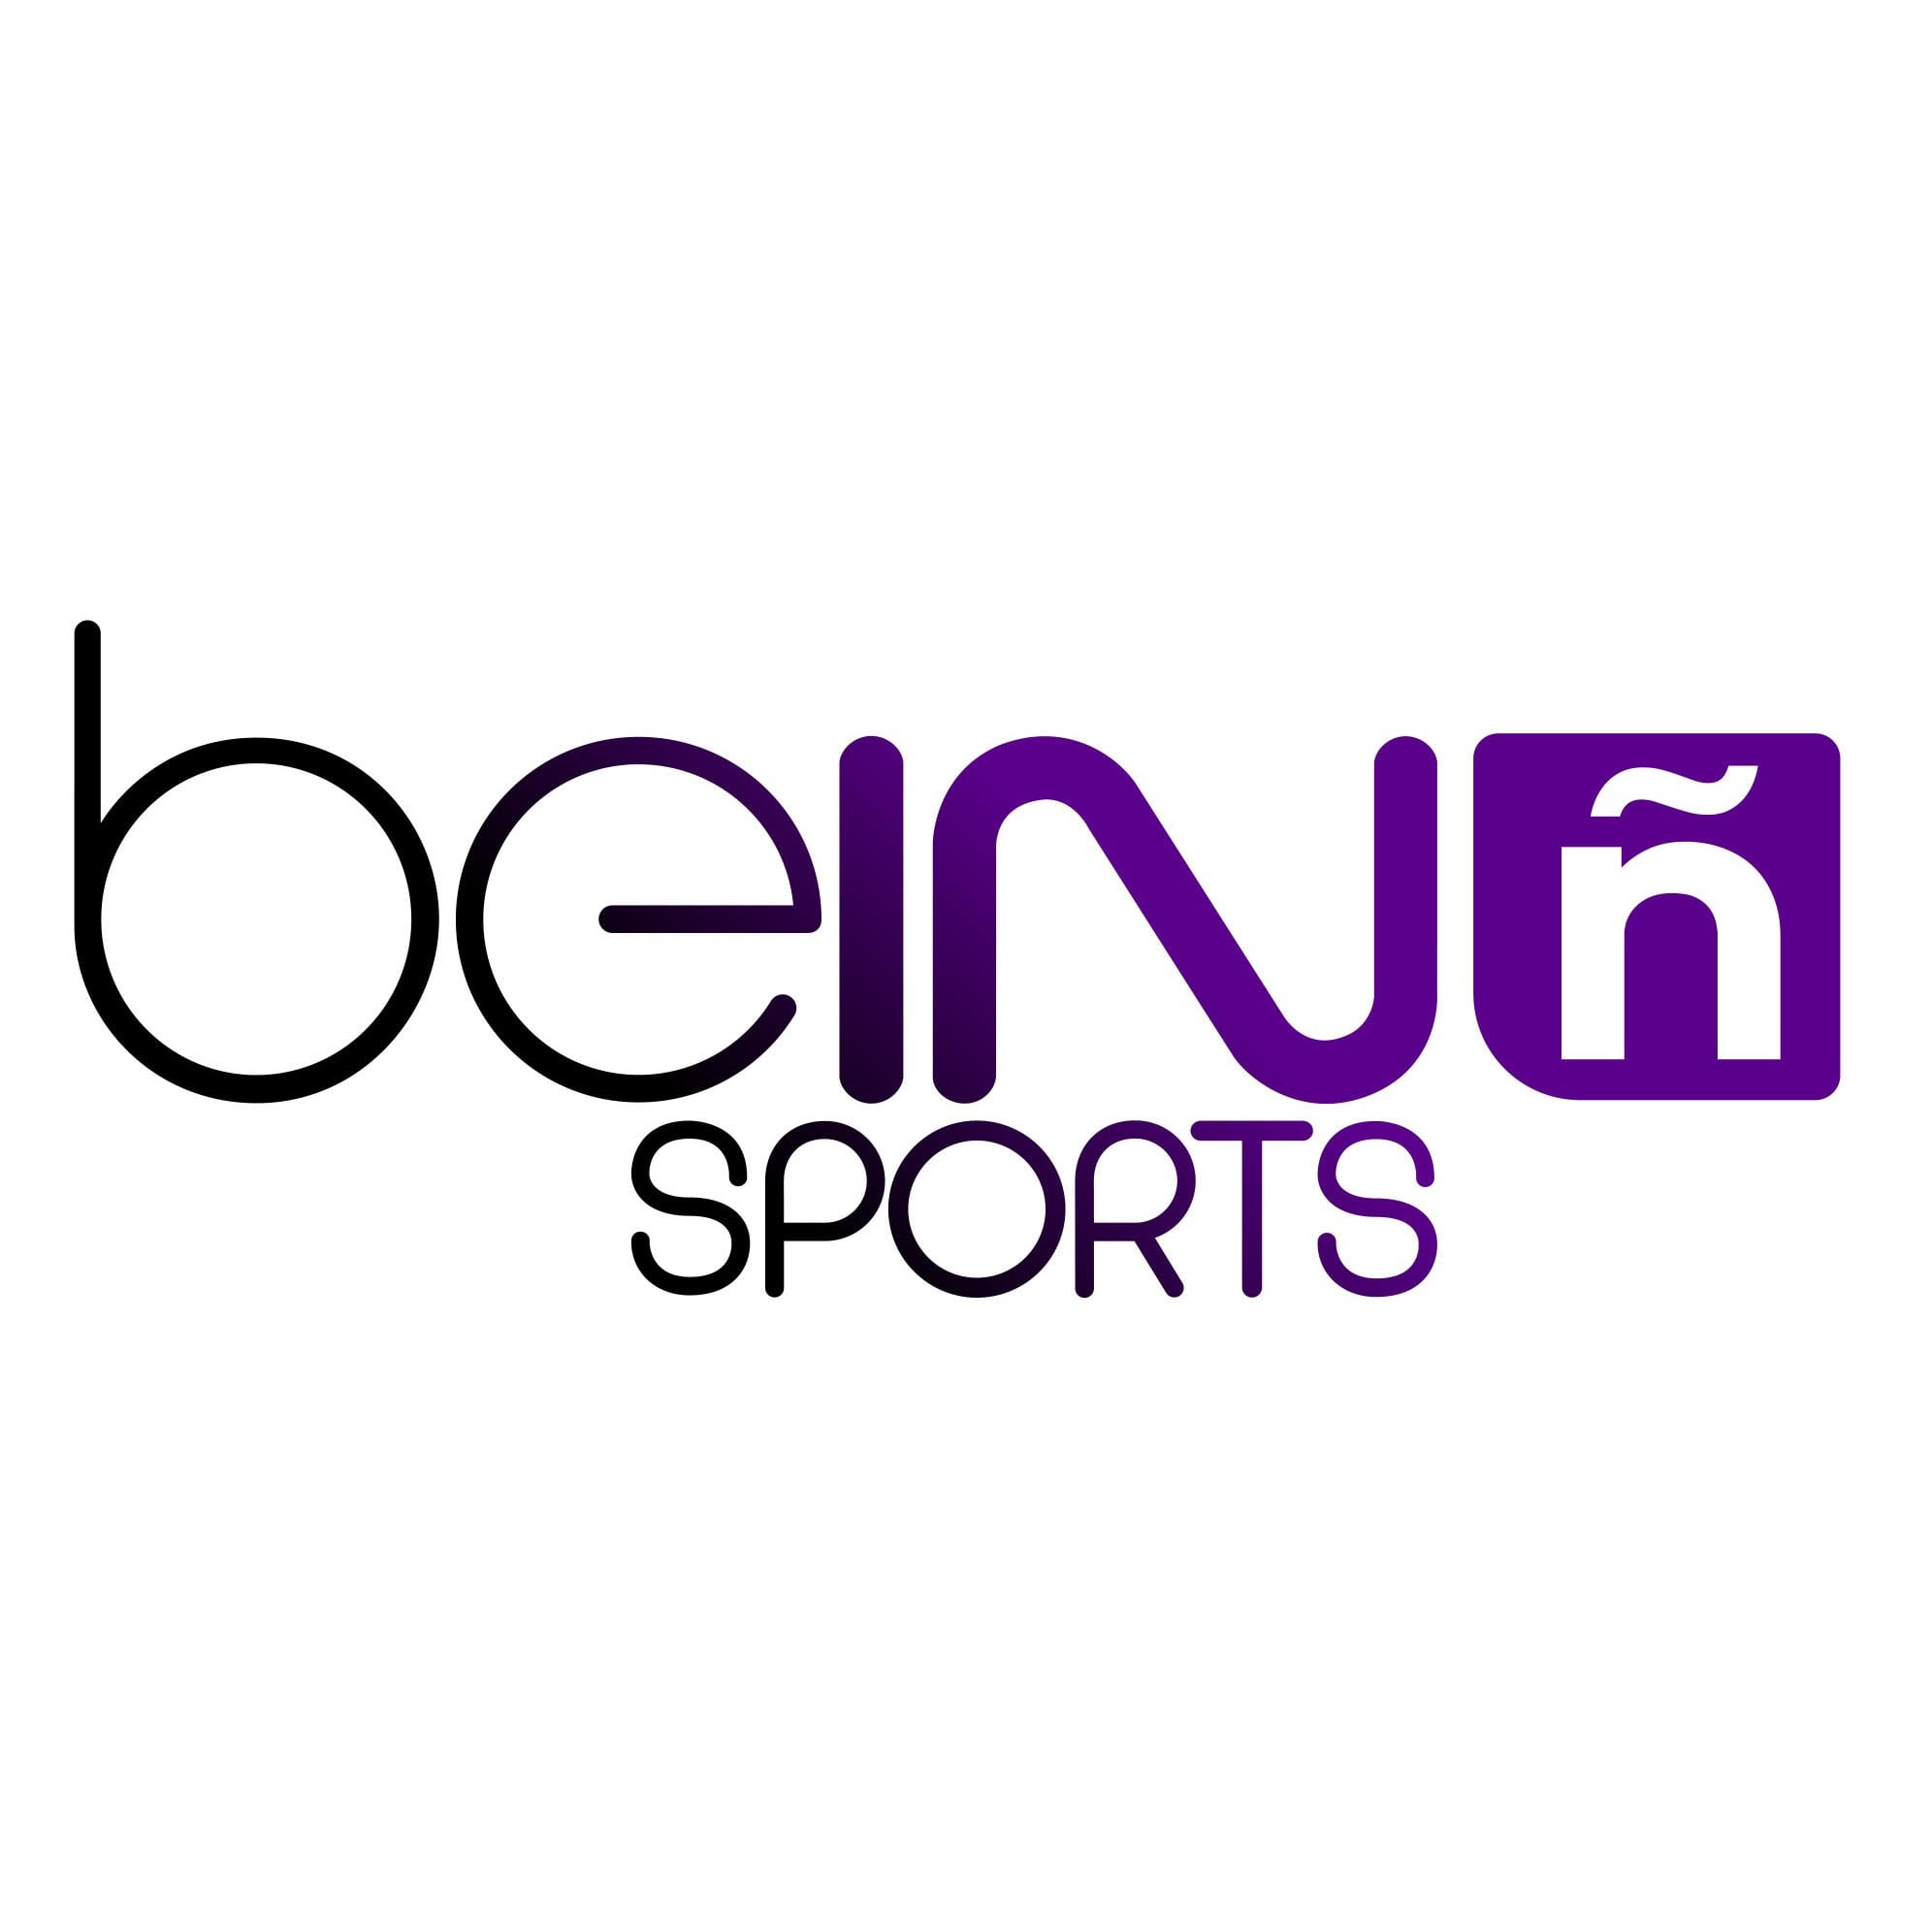 Bein sports live stream. Логотип Телеканал Bein Sports. Bein Sports Max 2. Bein Sport Max hd1.